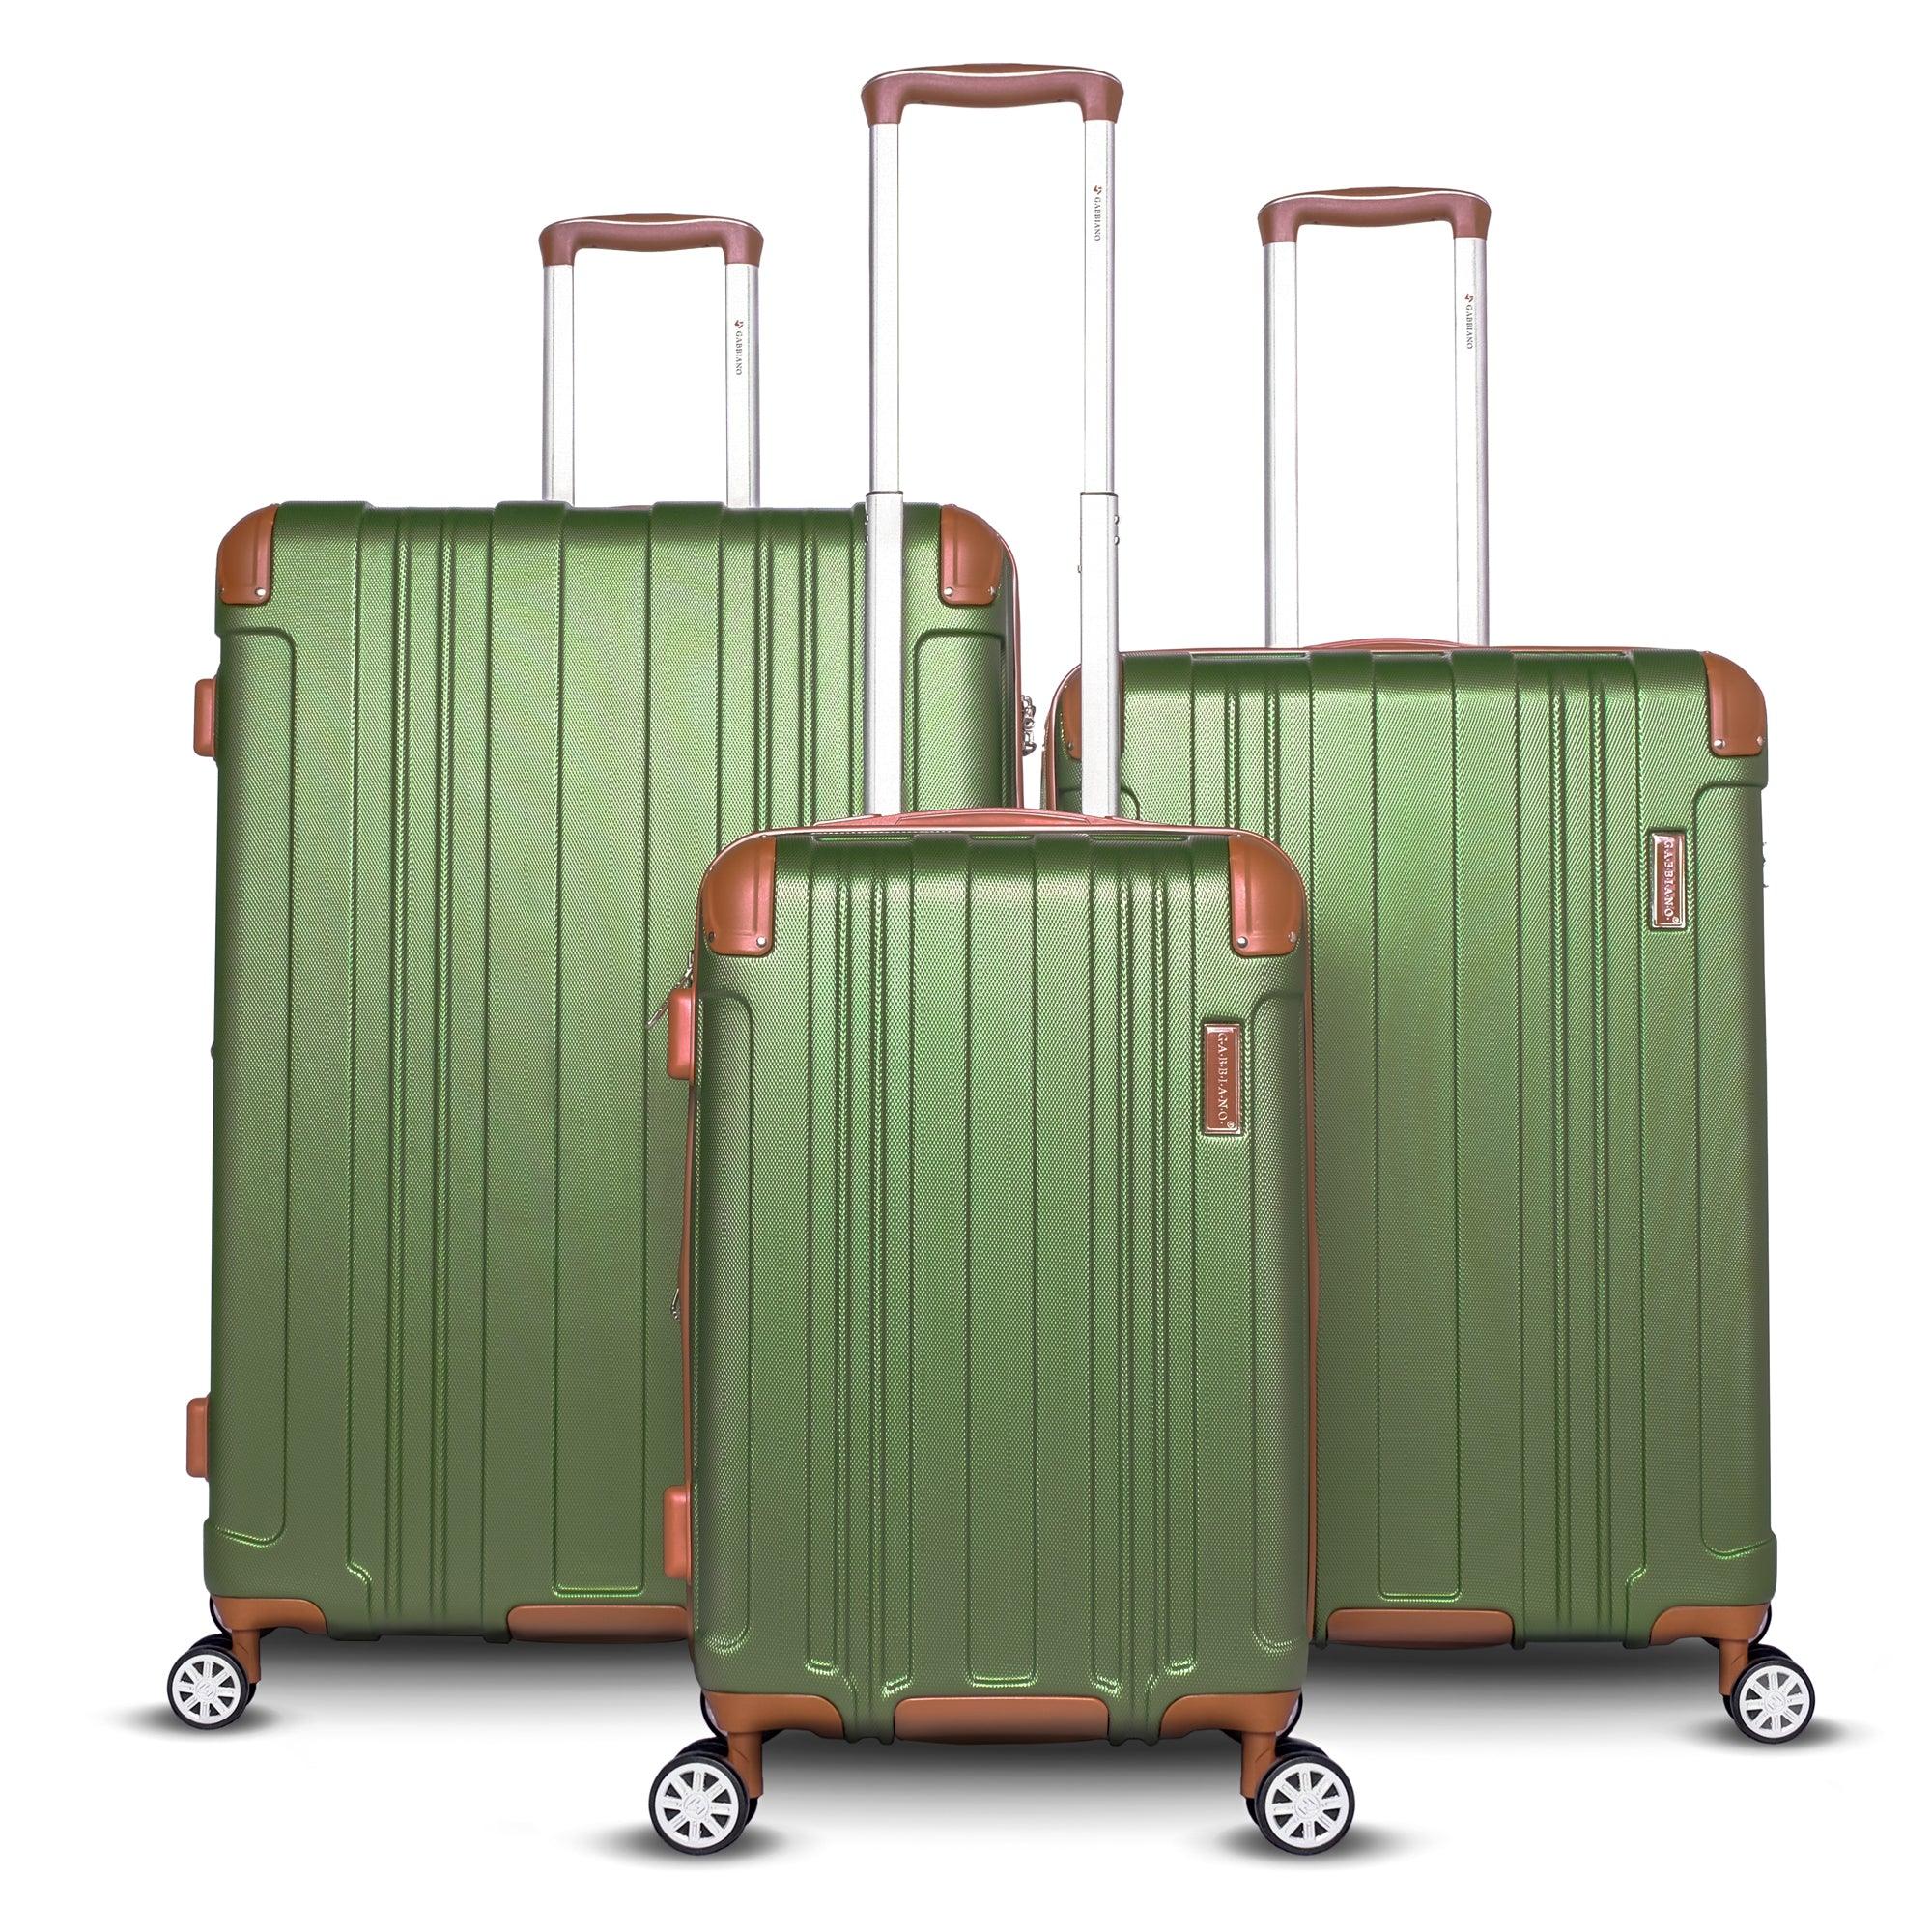 Ga2070 Pc+Abs Resin Hard Case 25'' - Voyage Luggage